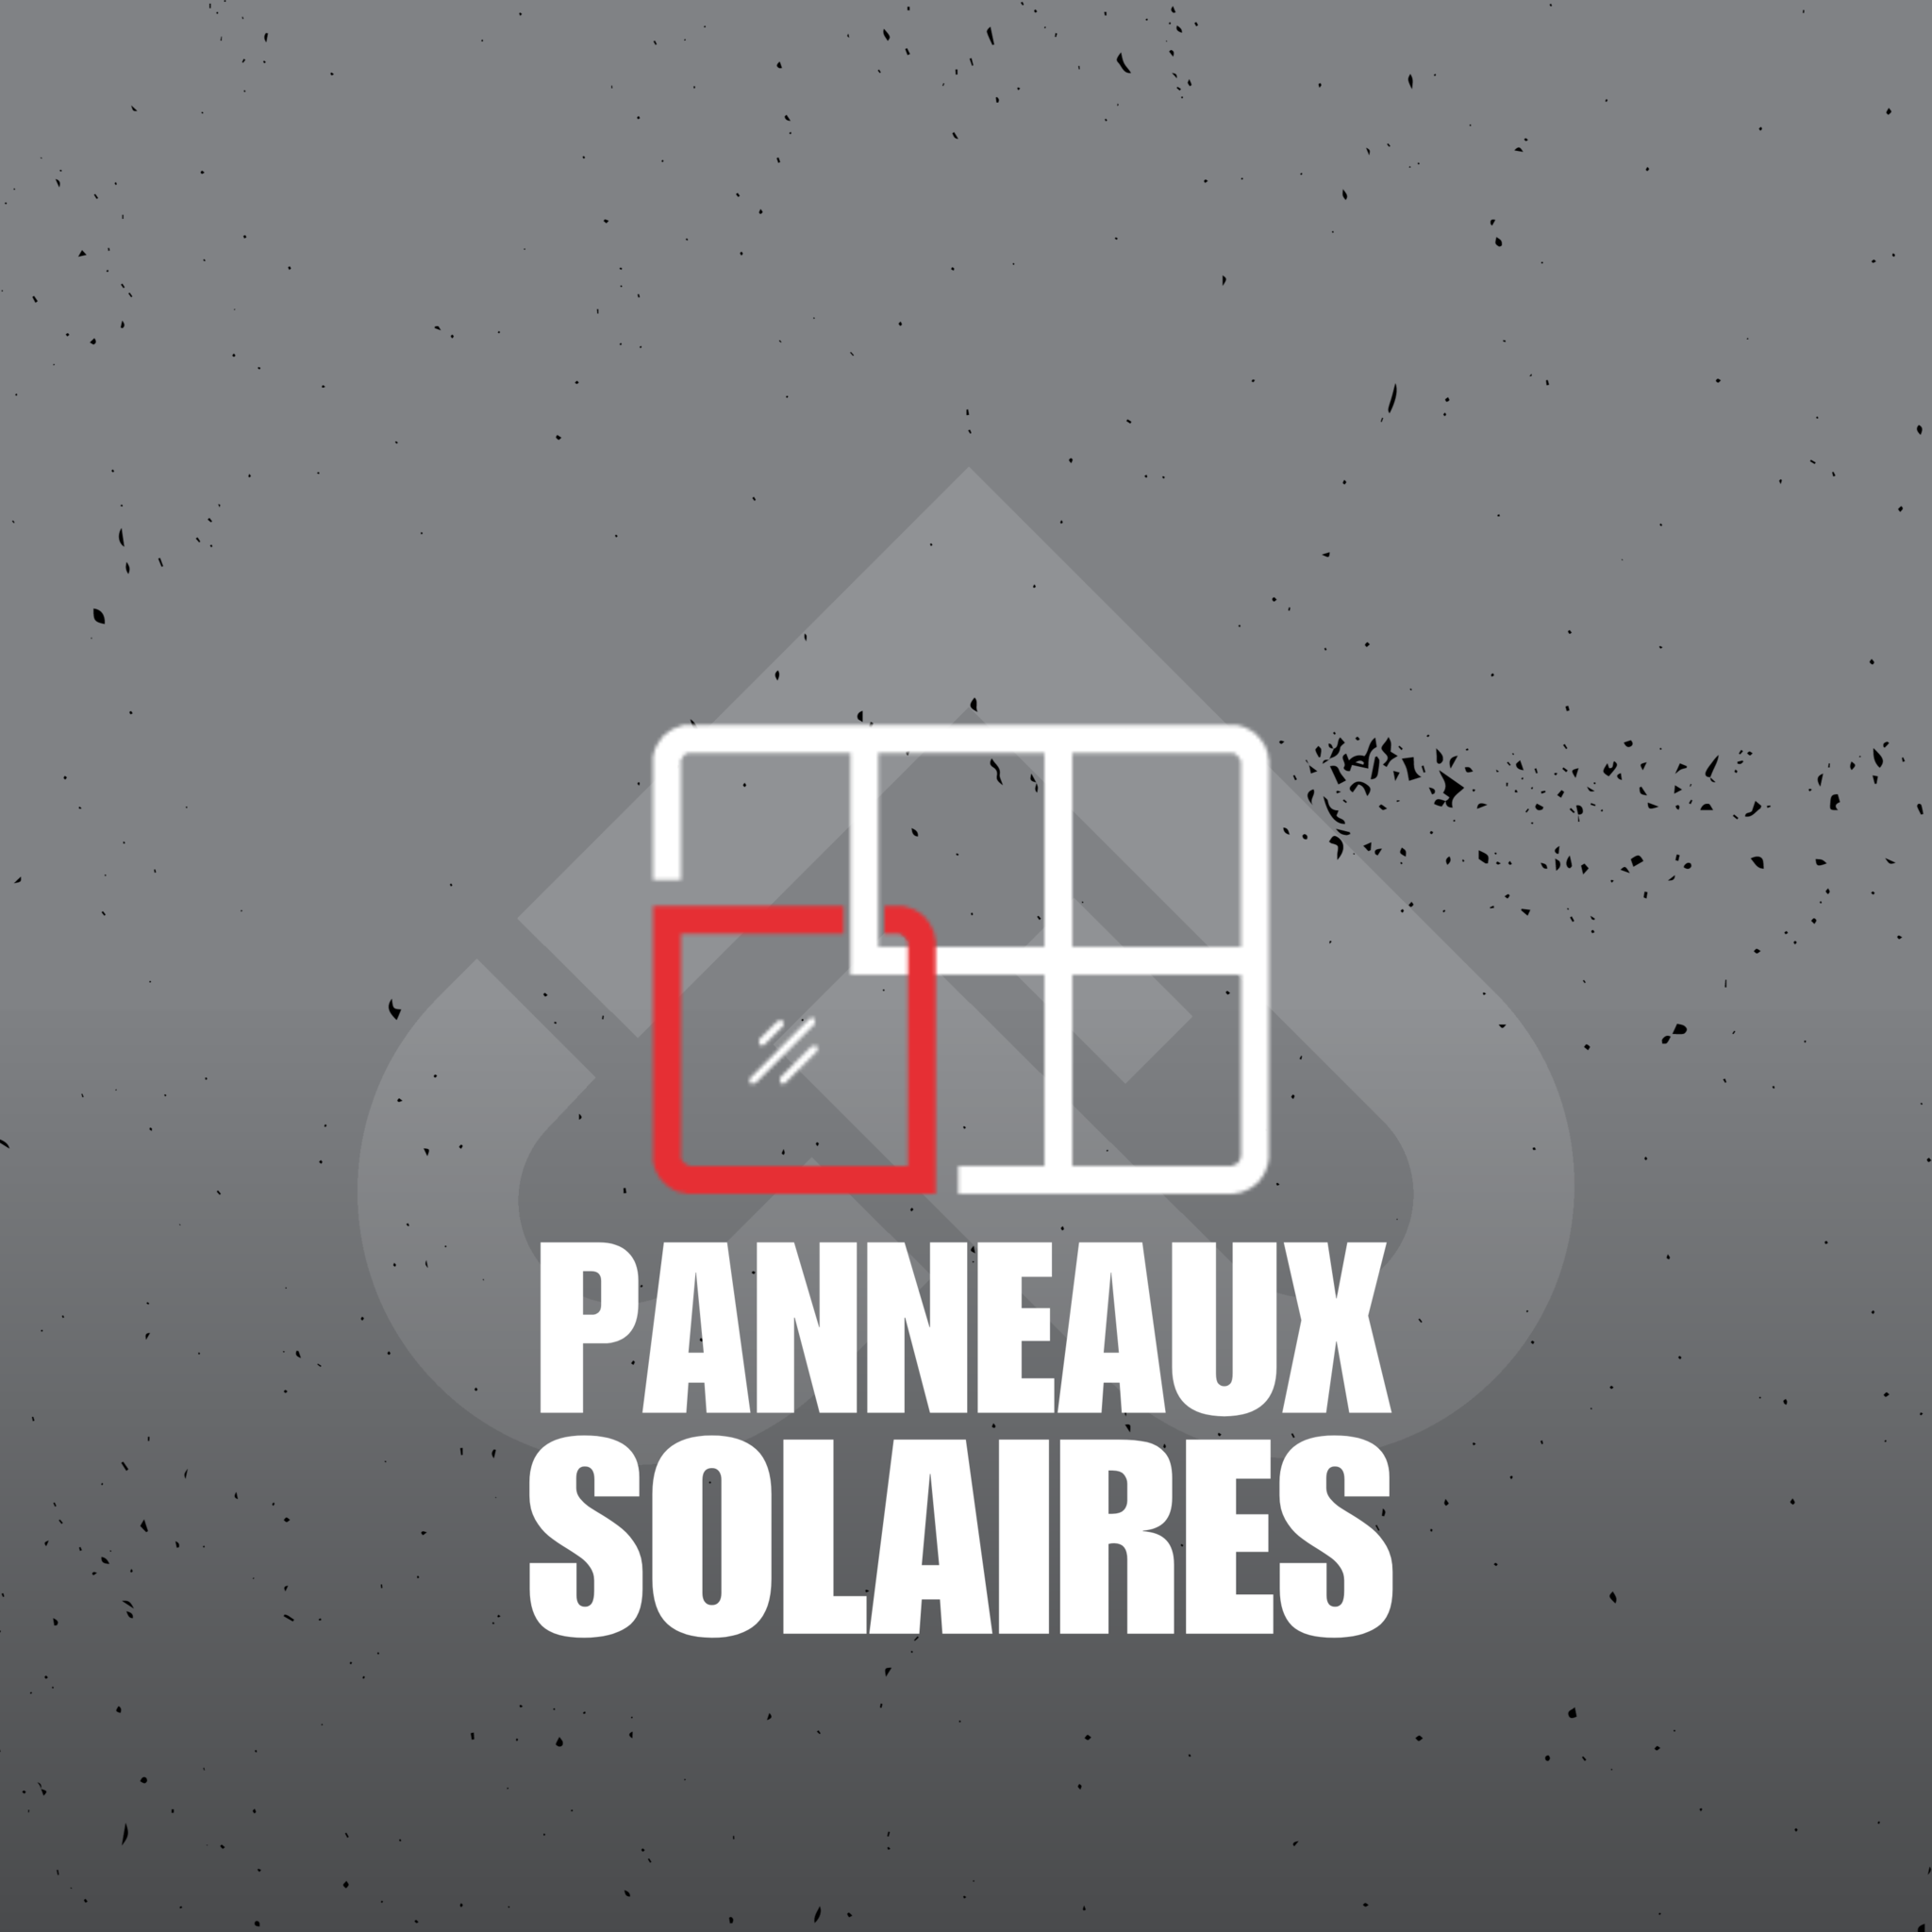 PANNEAUX SOLAIRES